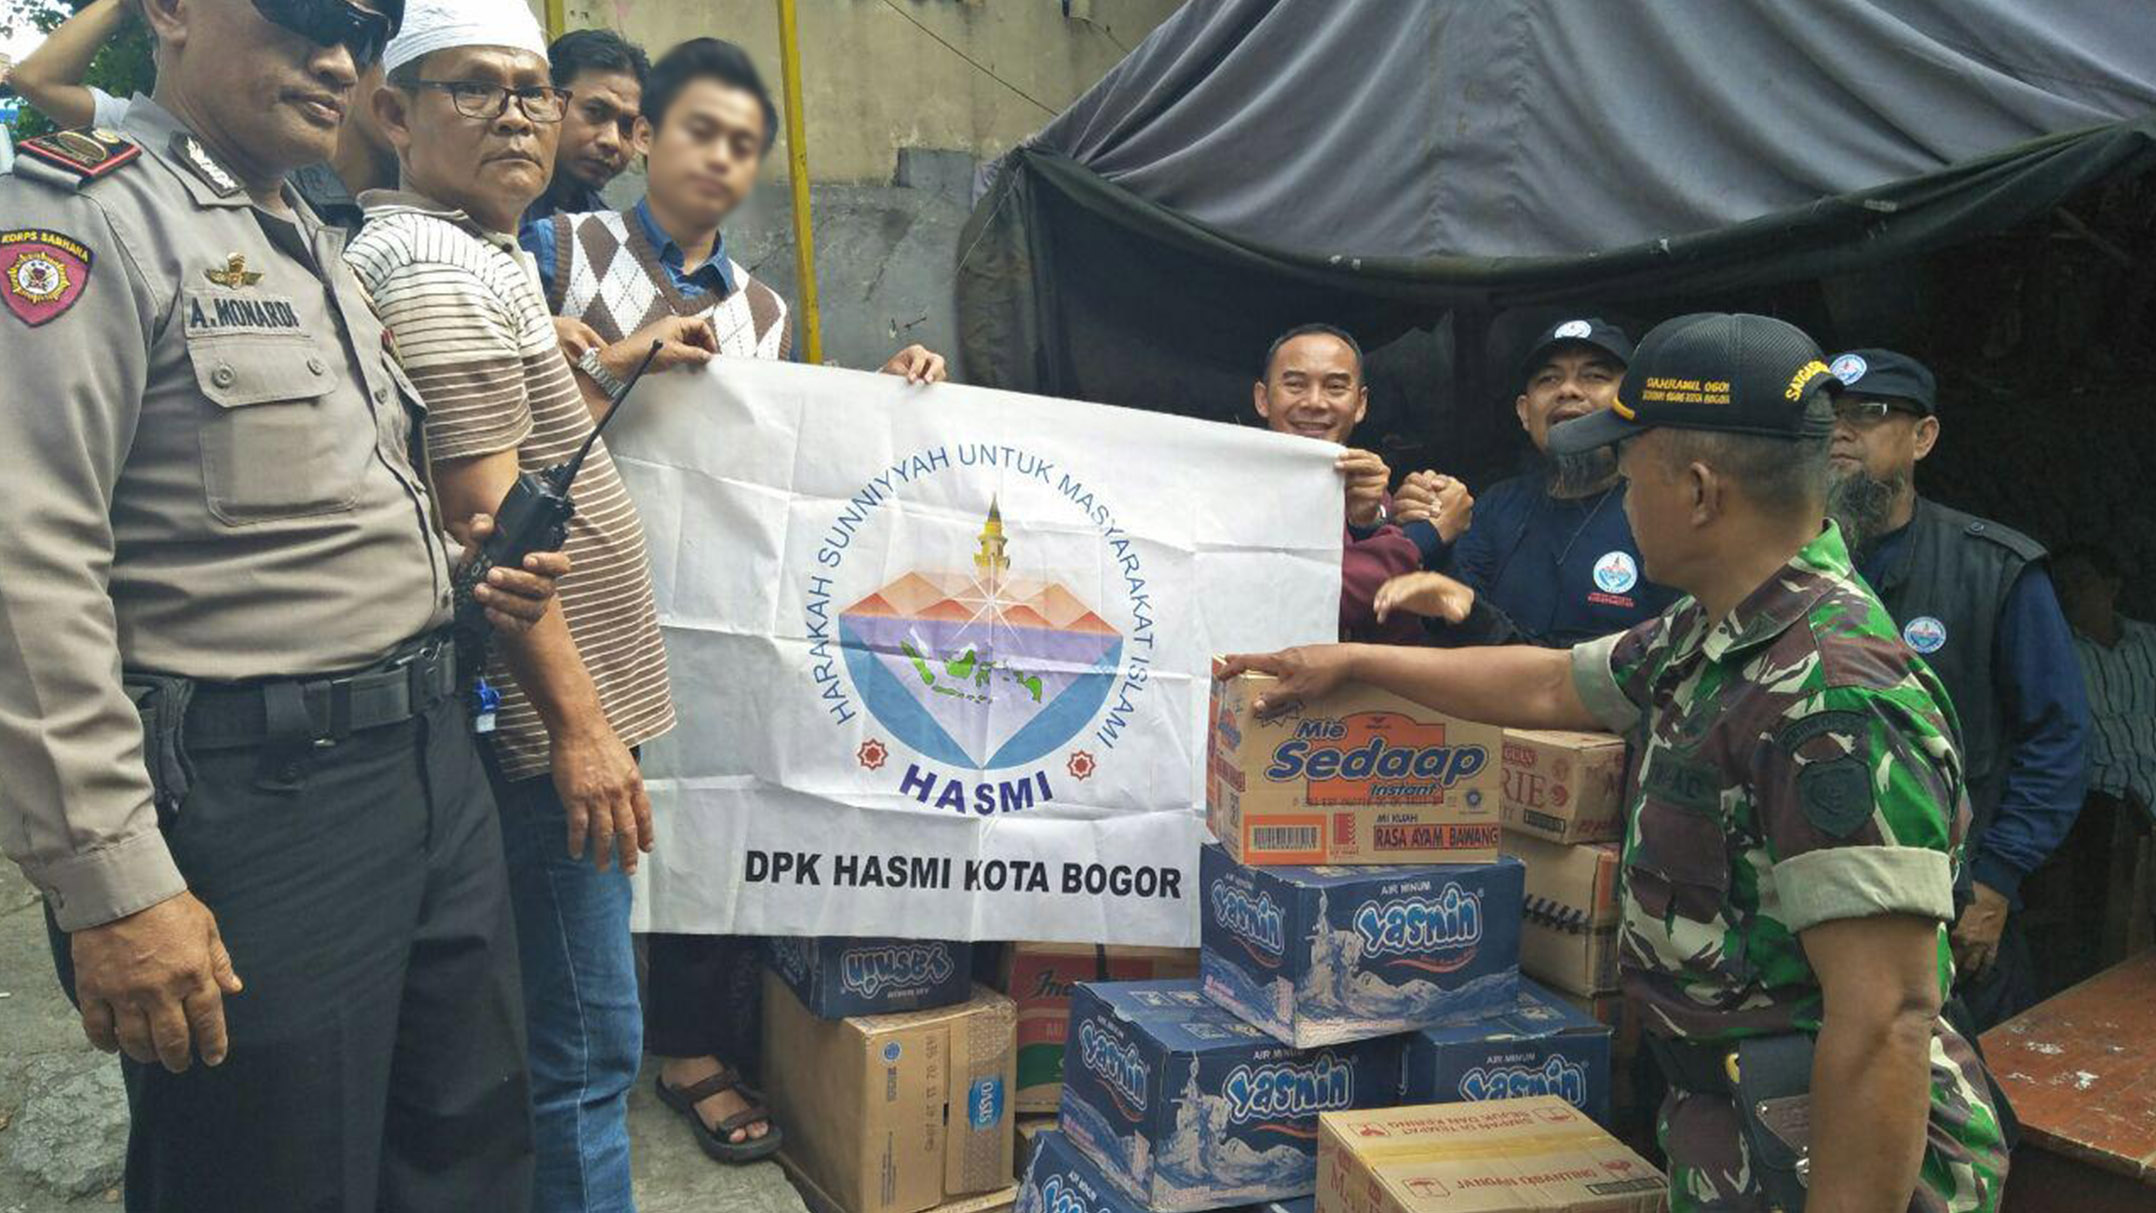 Kebakaran Di Bogor, Garda HASMI Sigap Membantu